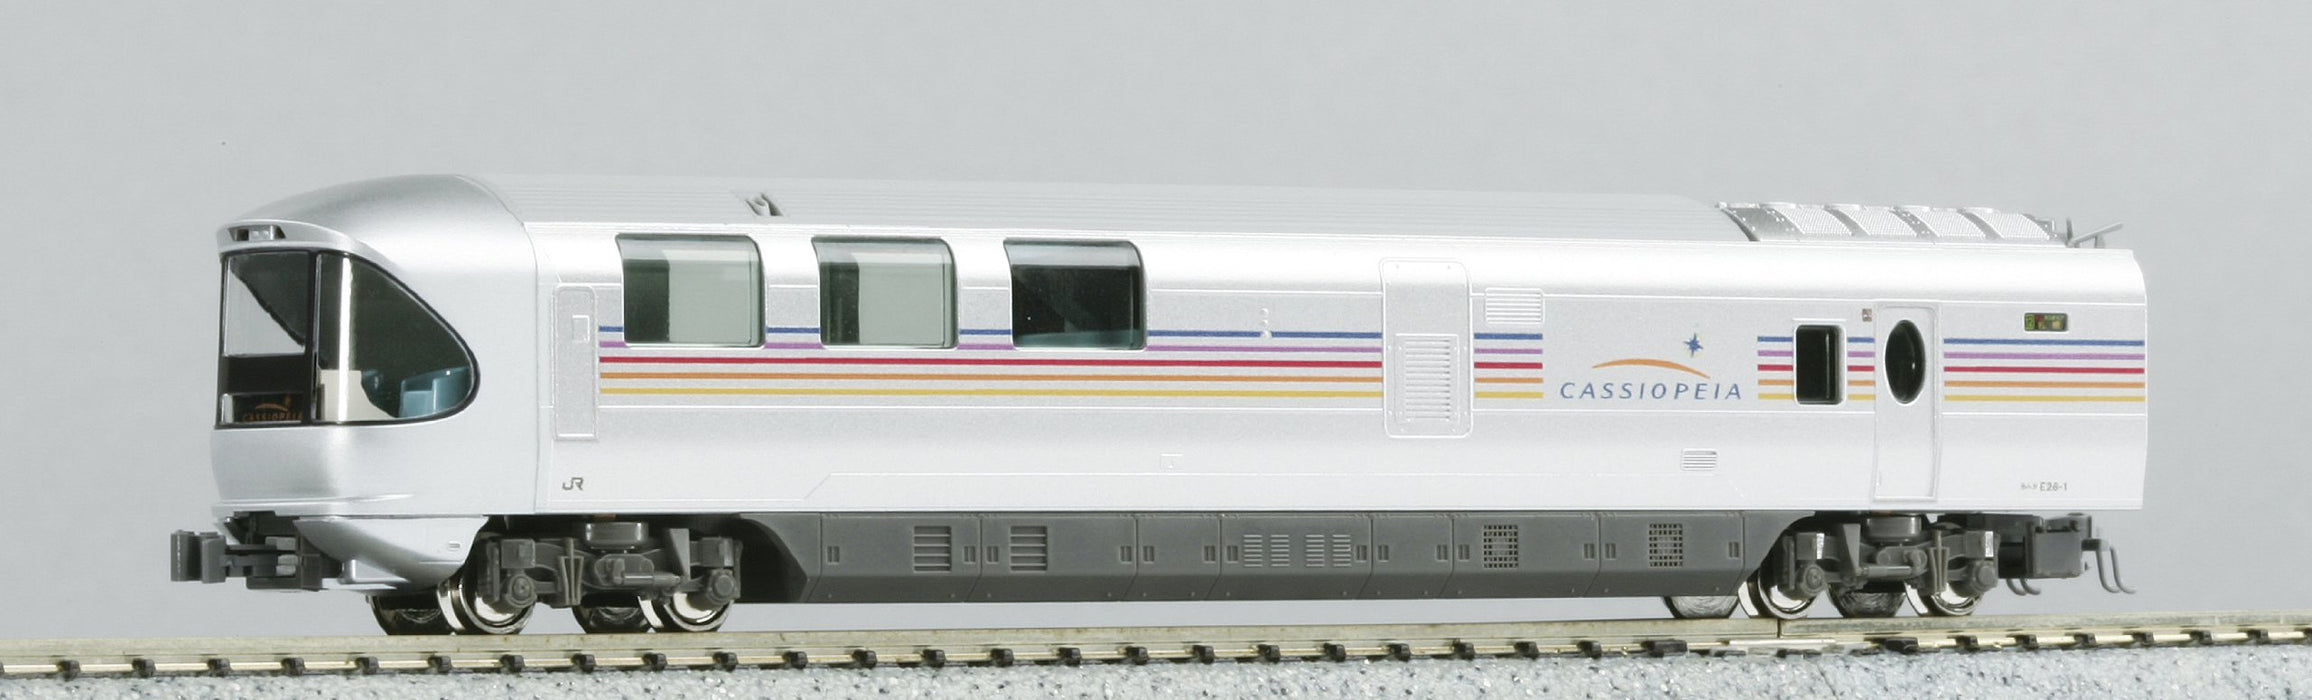 Modèle de jeu de 4 voitures Kato N Gauge - Série Ef510 + E26 Cassiopeia Basic 10-833 Rail passagers